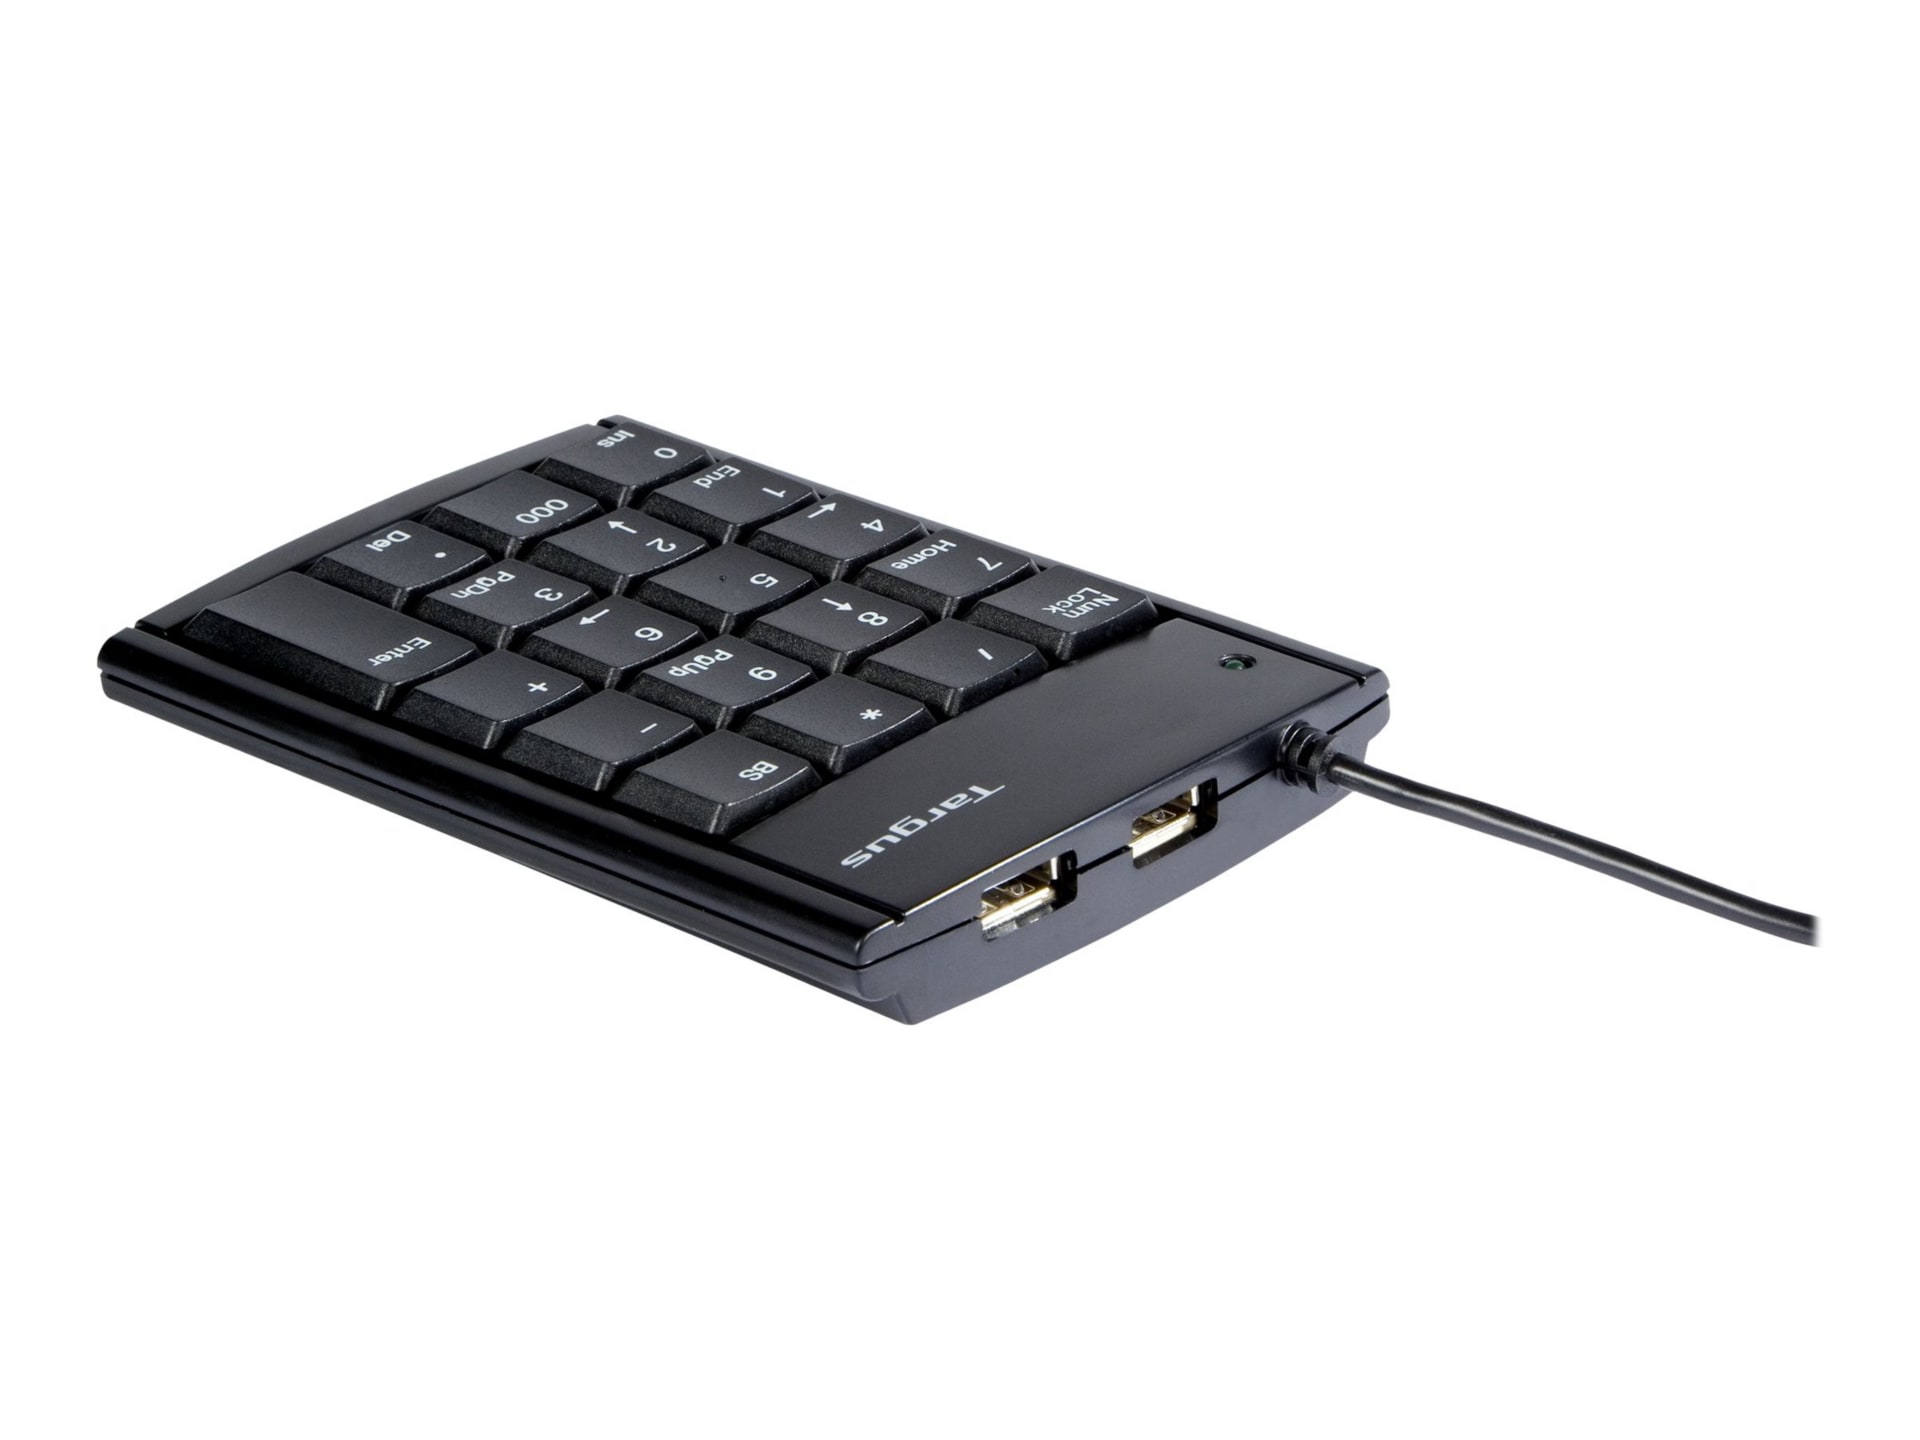 Targus USB Numeric Keypad with 2-port Hub